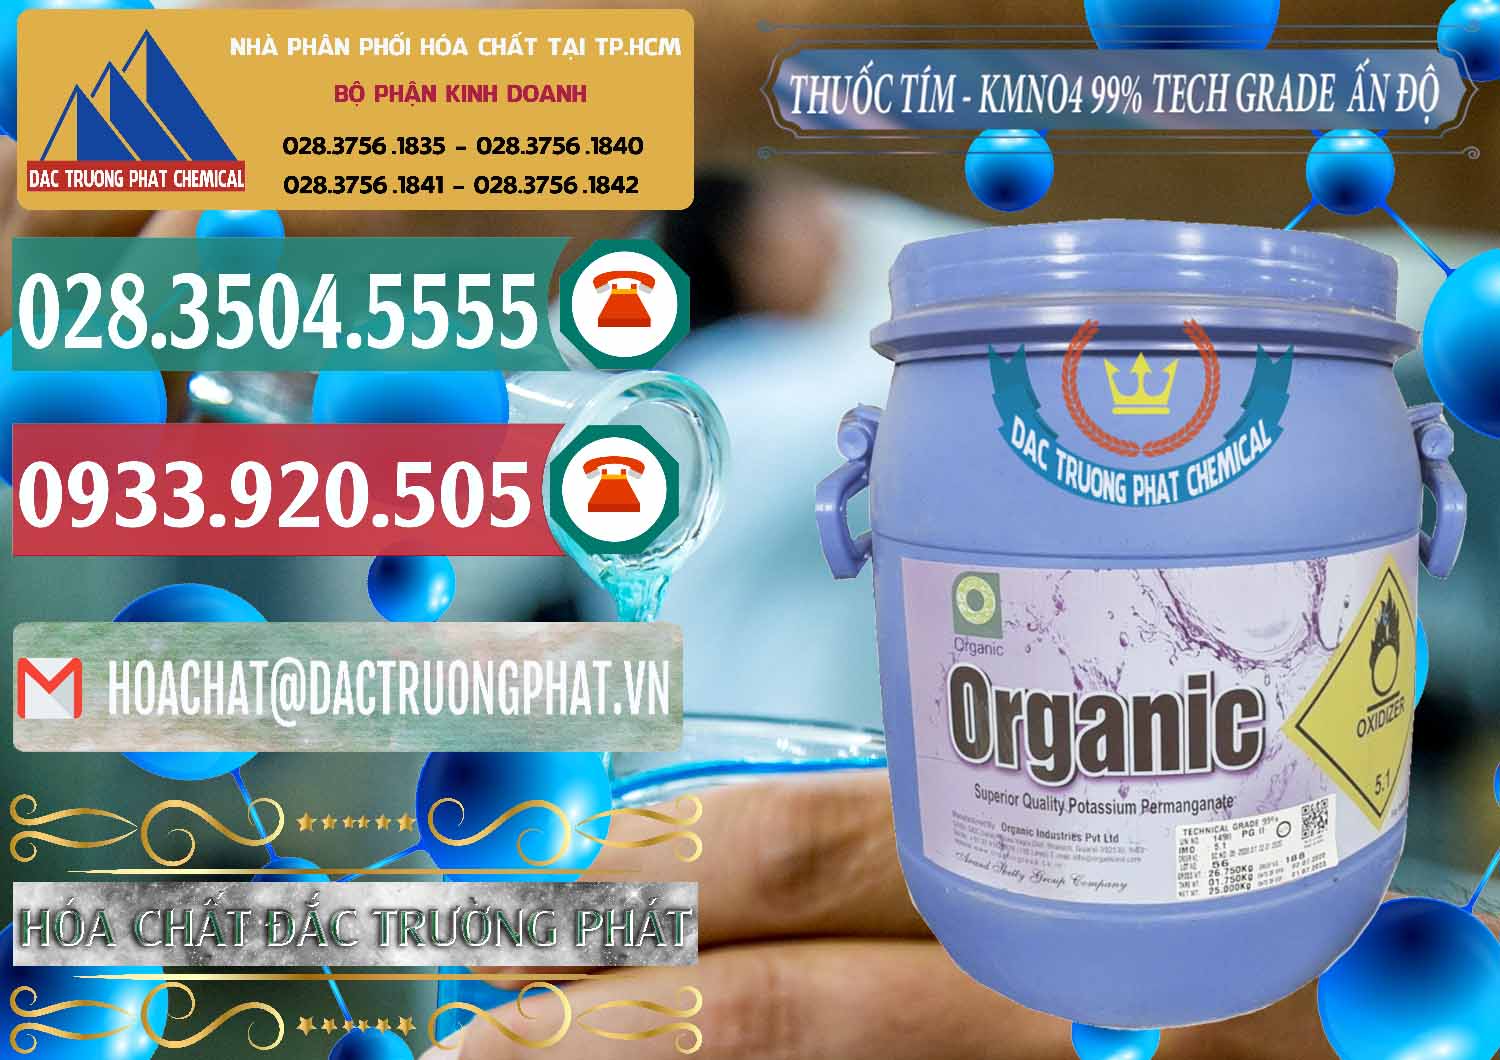 Nơi chuyên kinh doanh & bán Thuốc Tím - KMNO4 99% Organic Group Ấn Độ India - 0250 - Cty chuyên bán & cung cấp hóa chất tại TP.HCM - muabanhoachat.vn